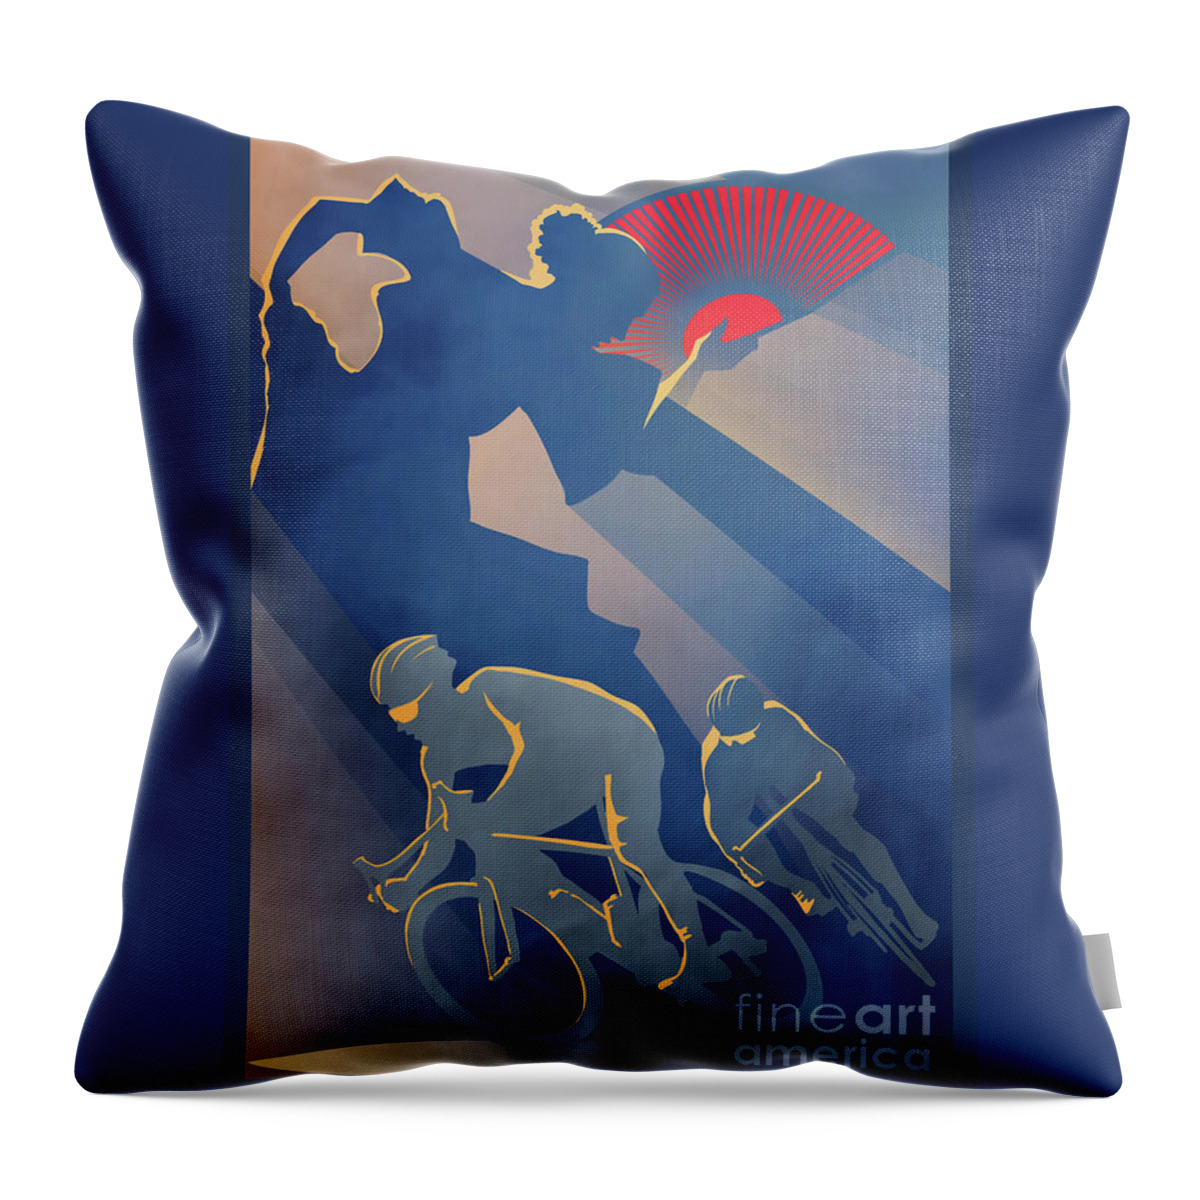 Cycling Art Throw Pillow featuring the digital art Vuelta Espana by Sassan Filsoof